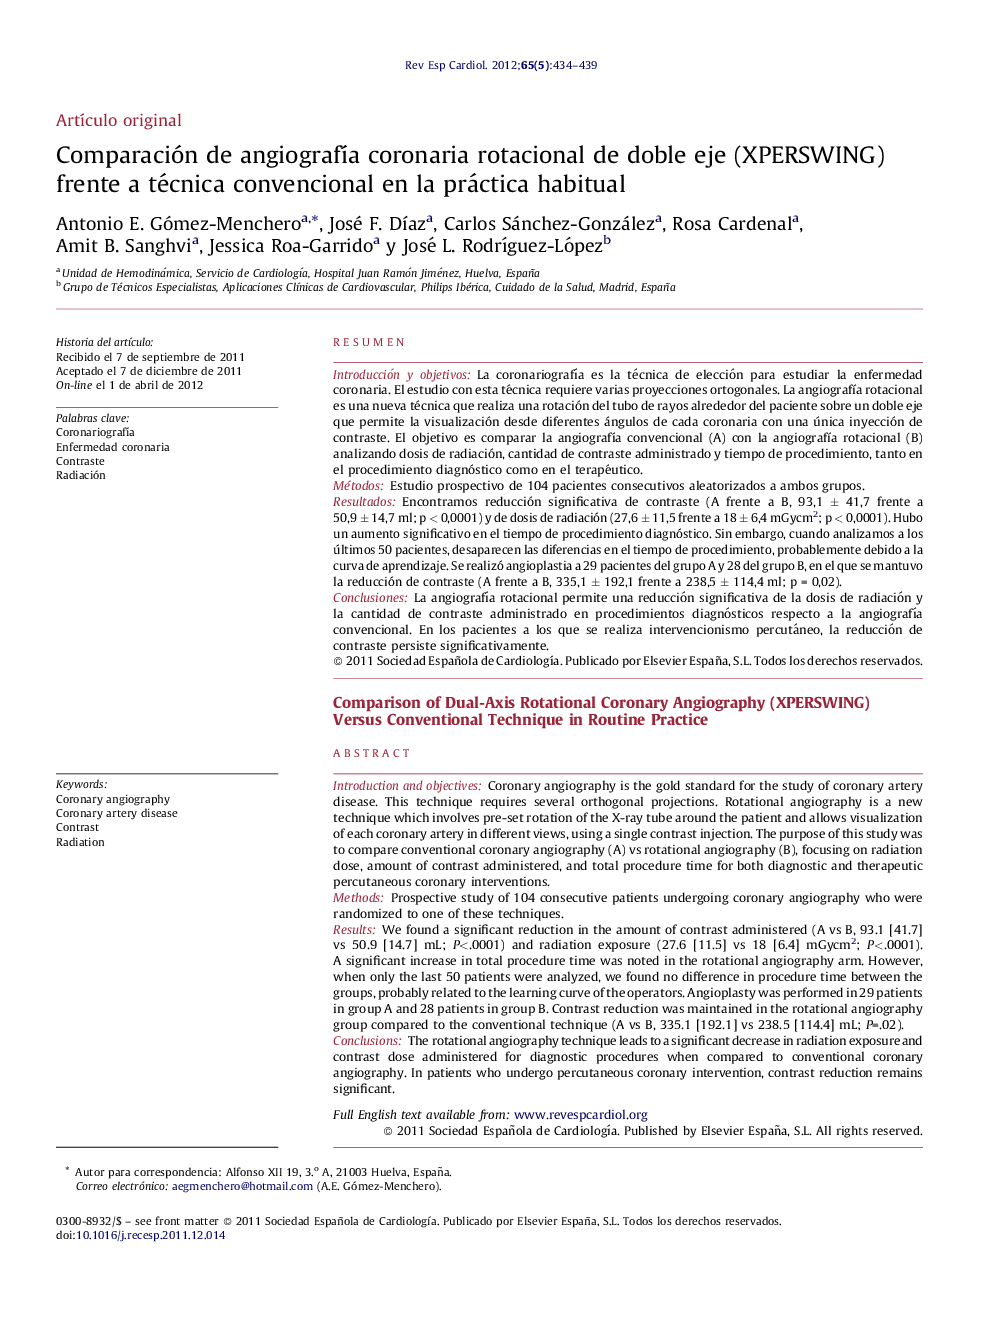 Comparación de angiografía coronaria rotacional de doble eje (XPERSWING) frente a técnica convencional en la práctica habitual